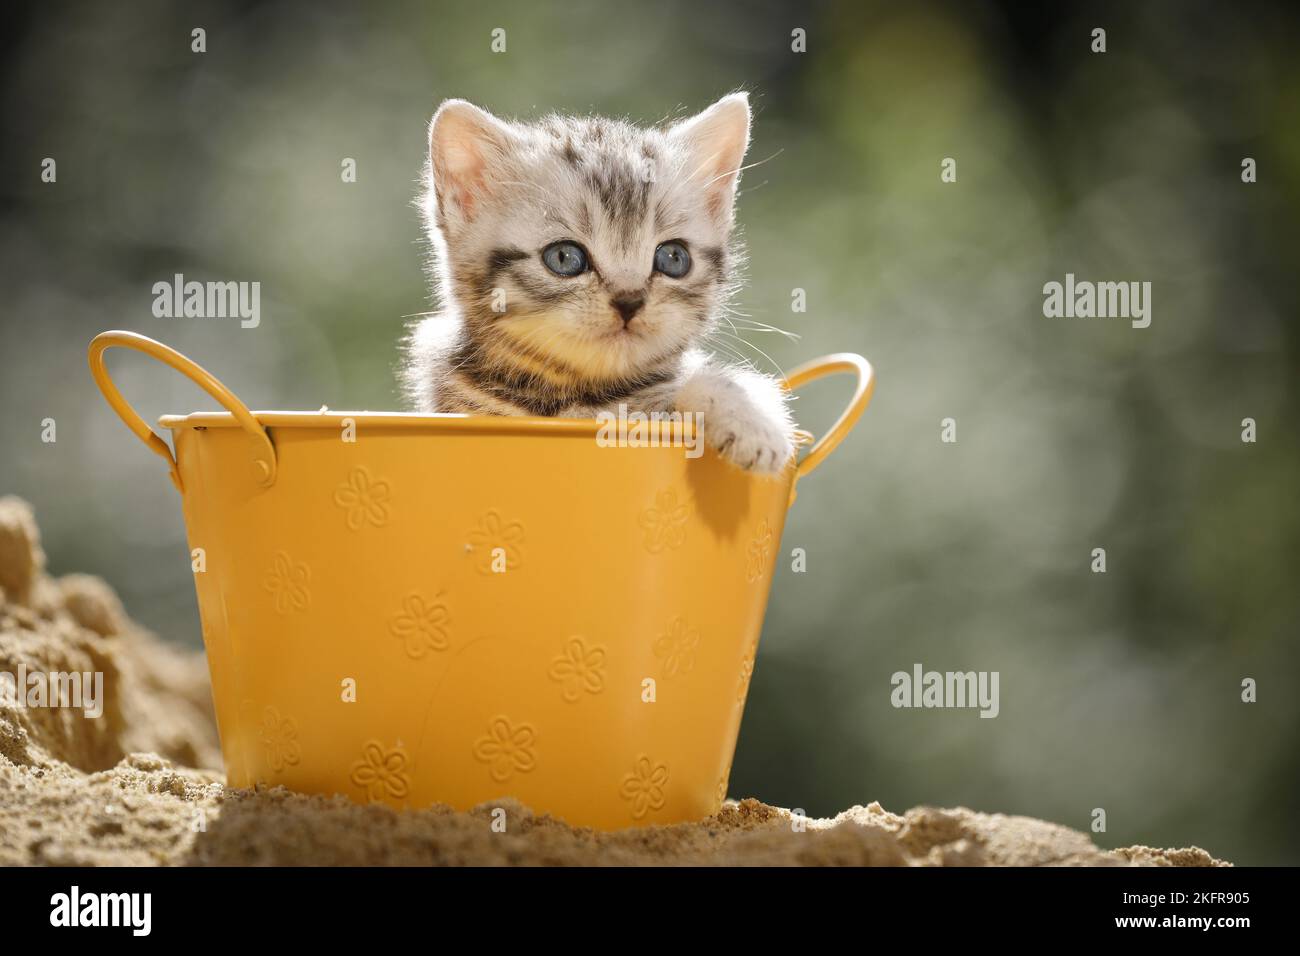 British shorthair kitten in bucket Stock Photo